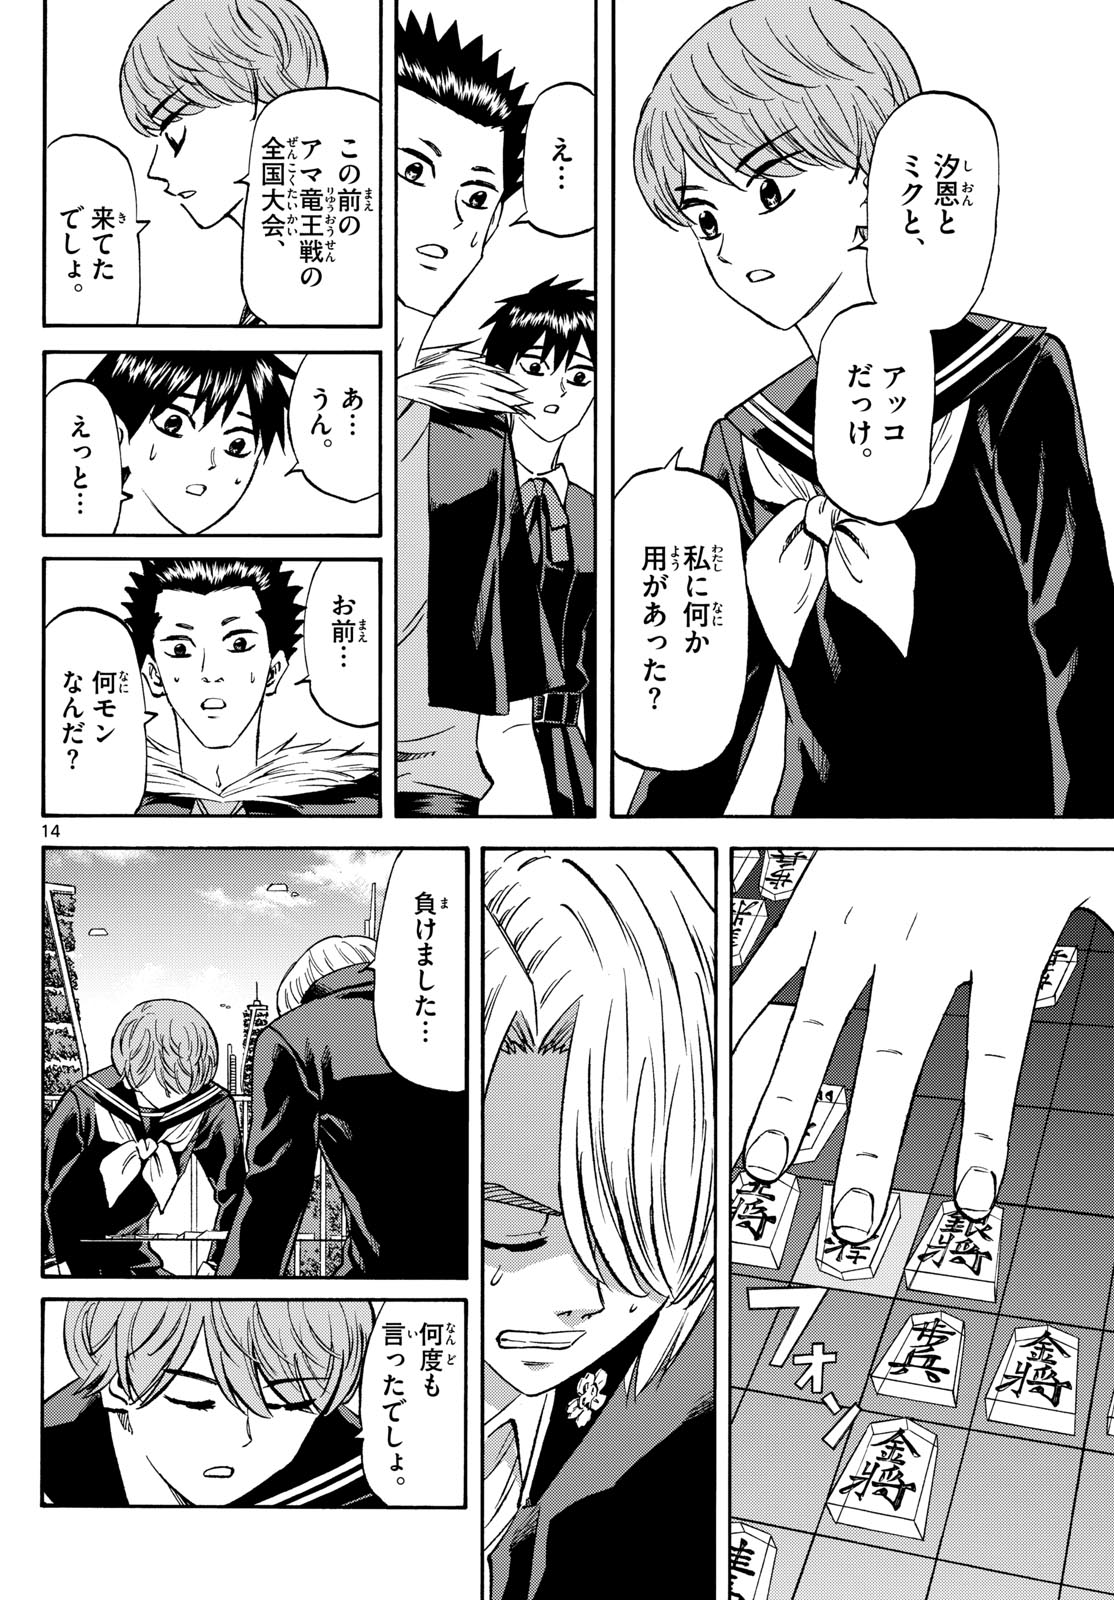 Tatsu to Ichigo - Chapter 187 - Page 14